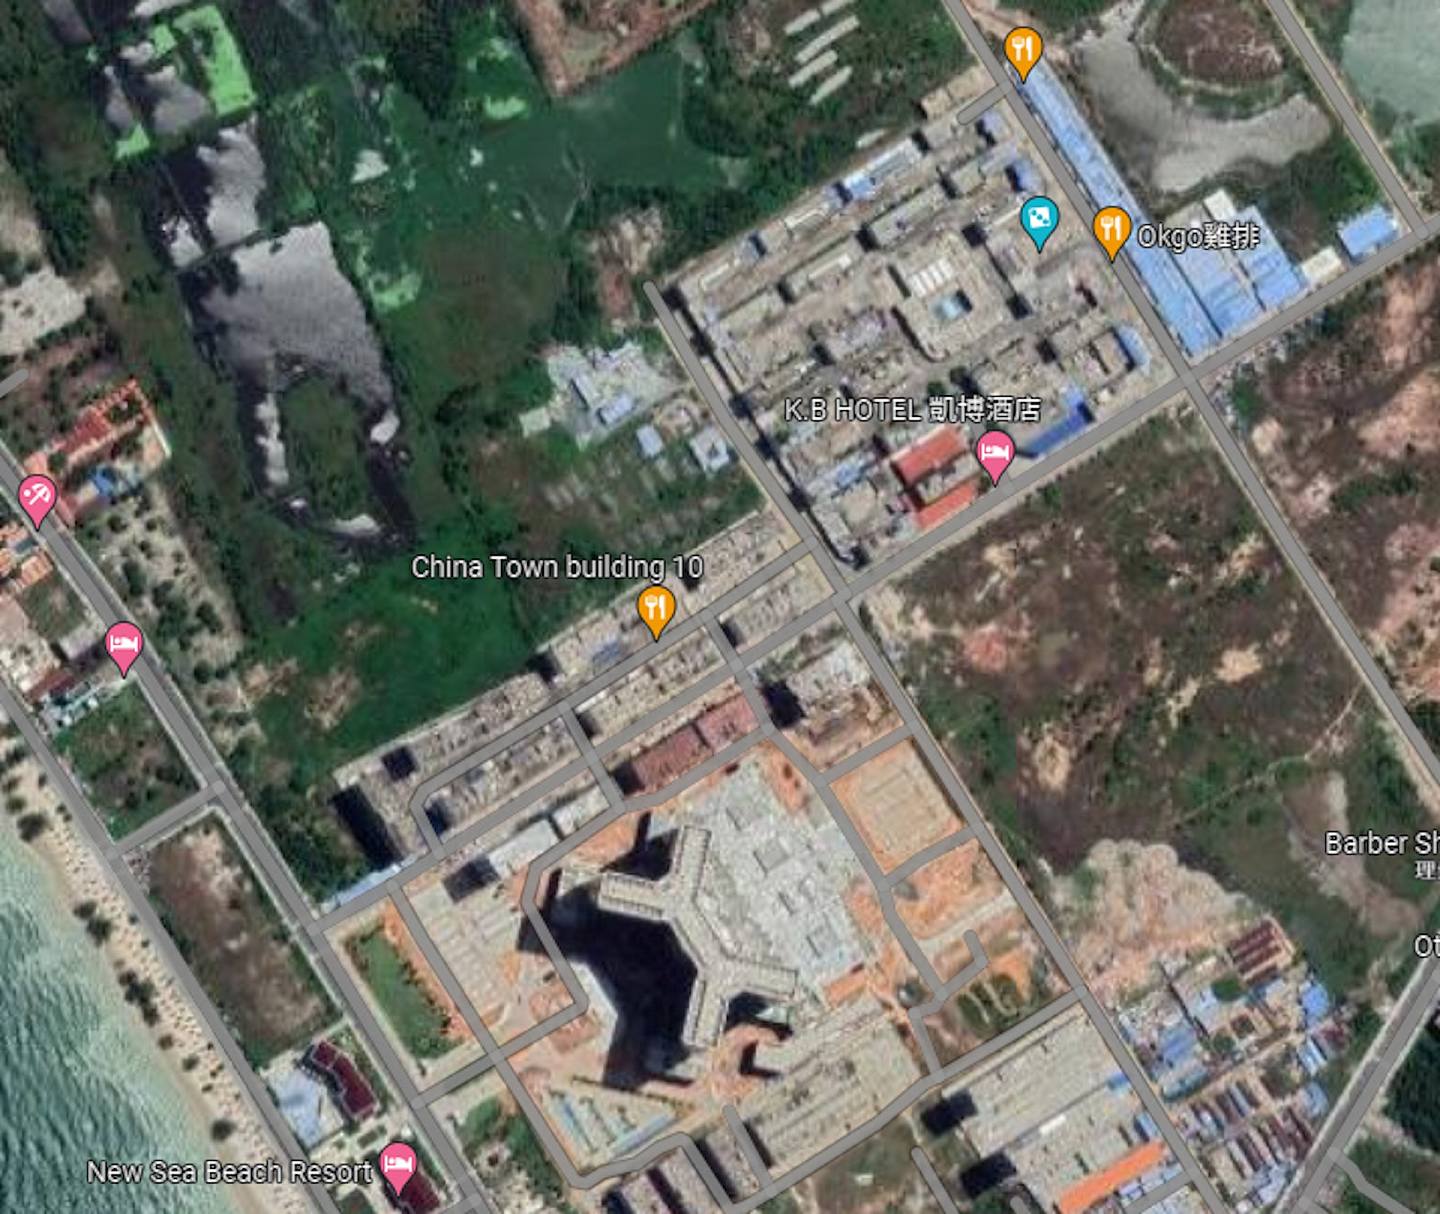 中国城由两个园区组织，右上的是「凯博」园区，左下则为「金水」园区。 (Google Map)